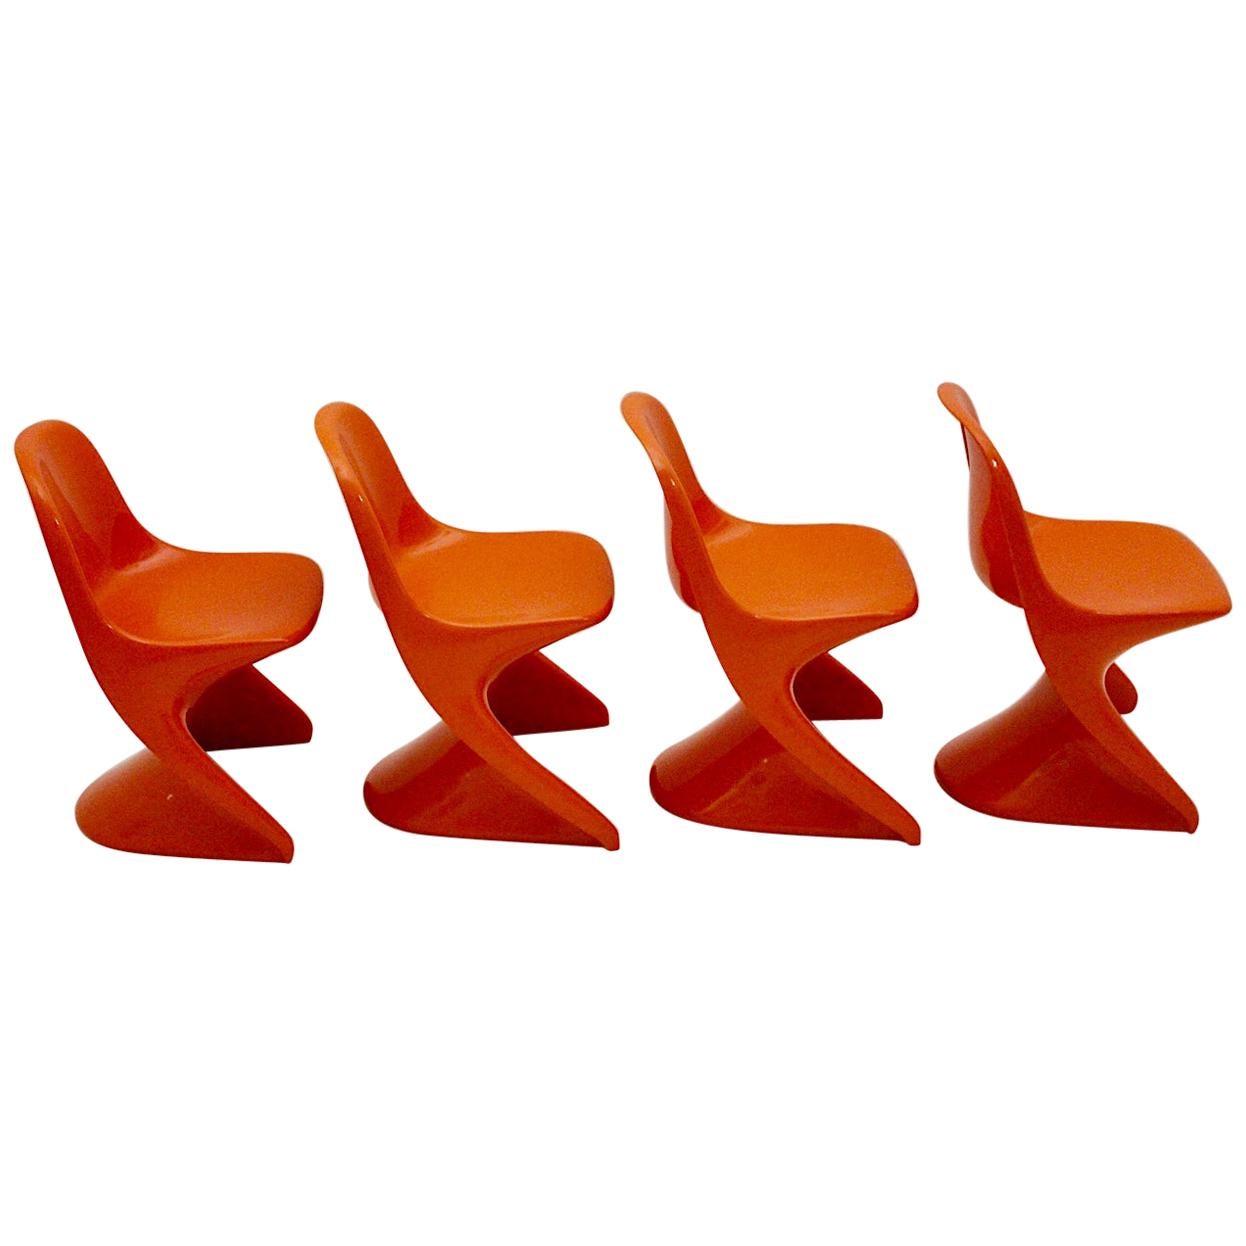 Quatre chaises empilables orange vintage en plastique de l'ère spatiale pour enfants Casalino, années 1970